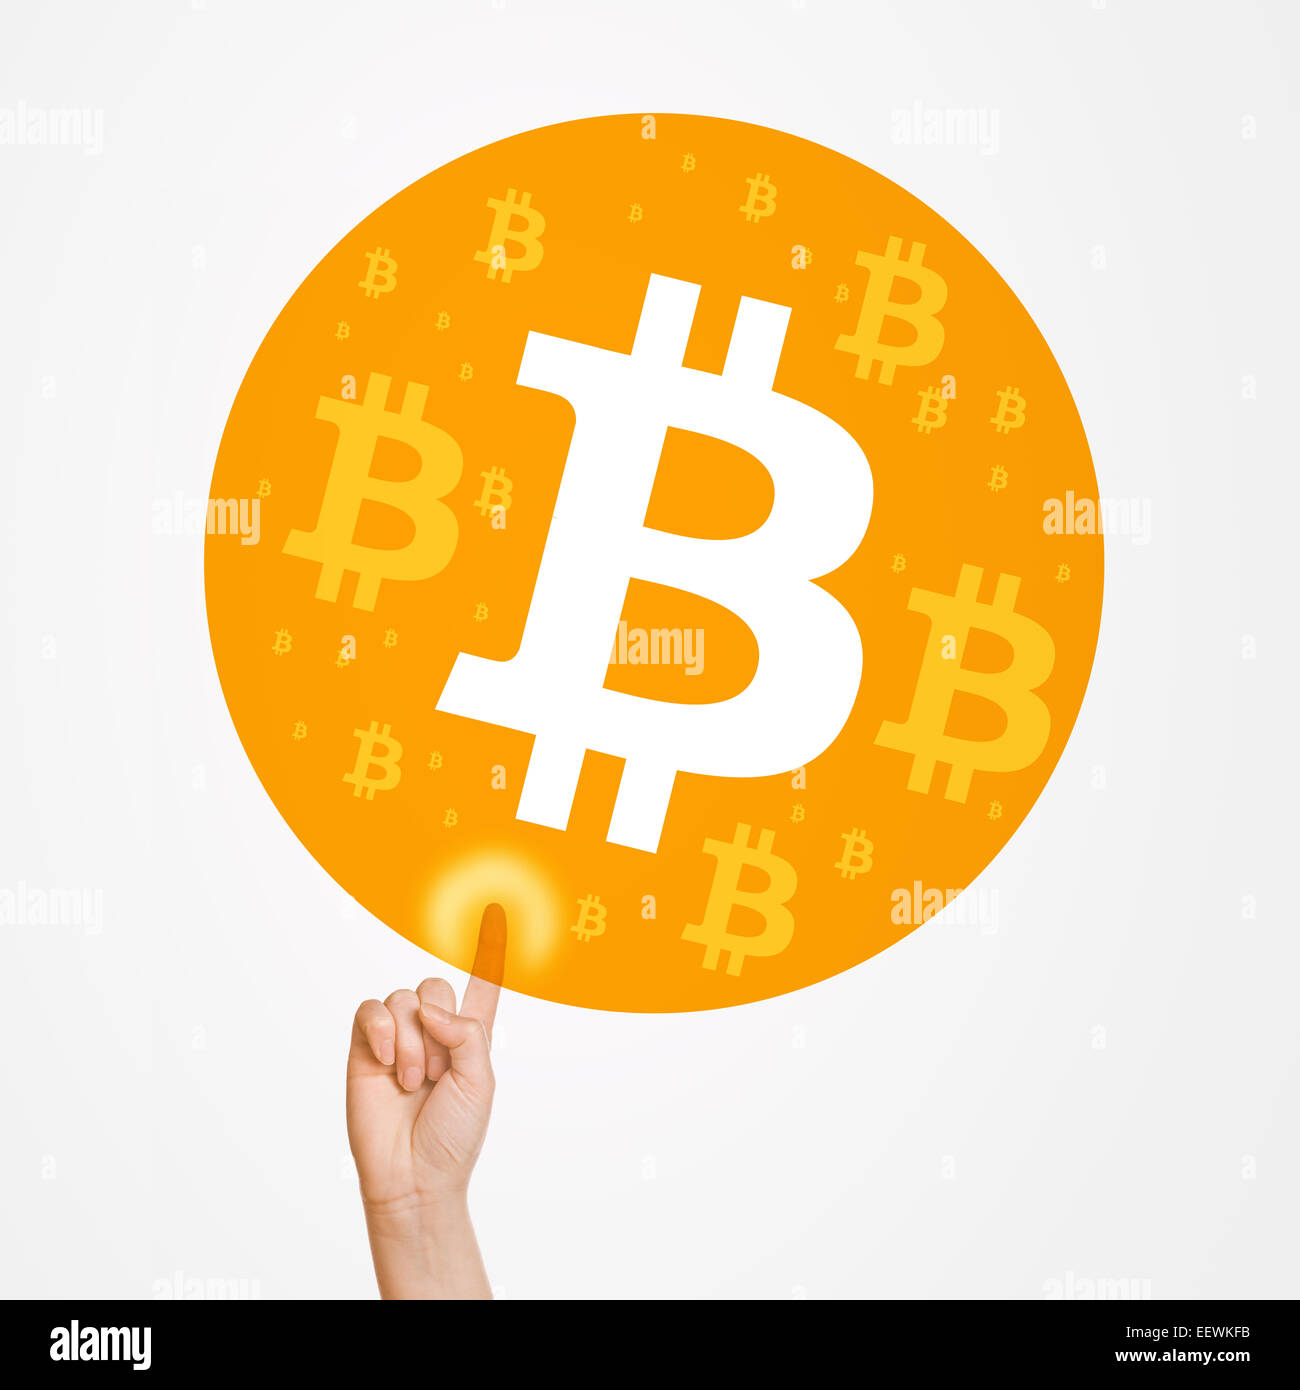 La scelta di bitcoins come moneta per acquistare il pagamento, donna premendo il touch screen pulsante. Foto Stock